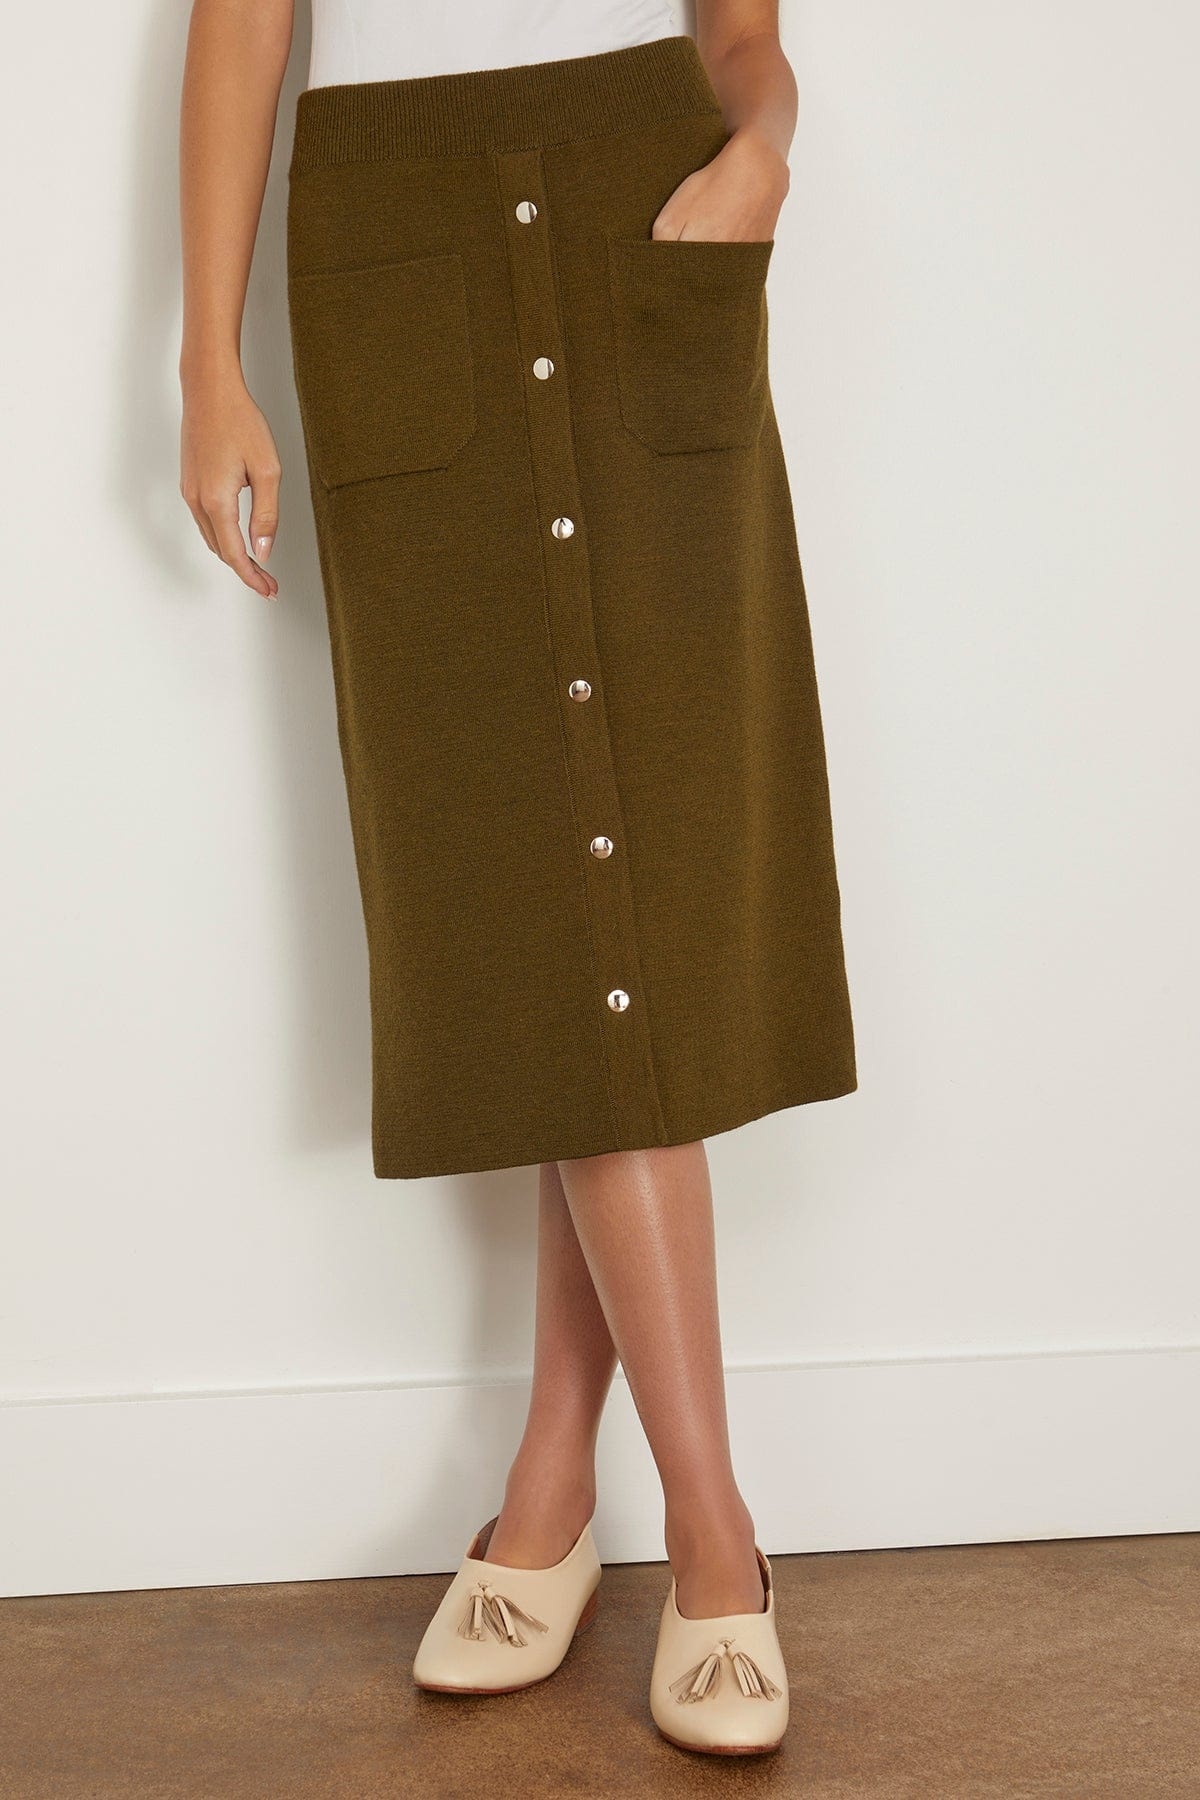 Bing Skirt in Olive - 3